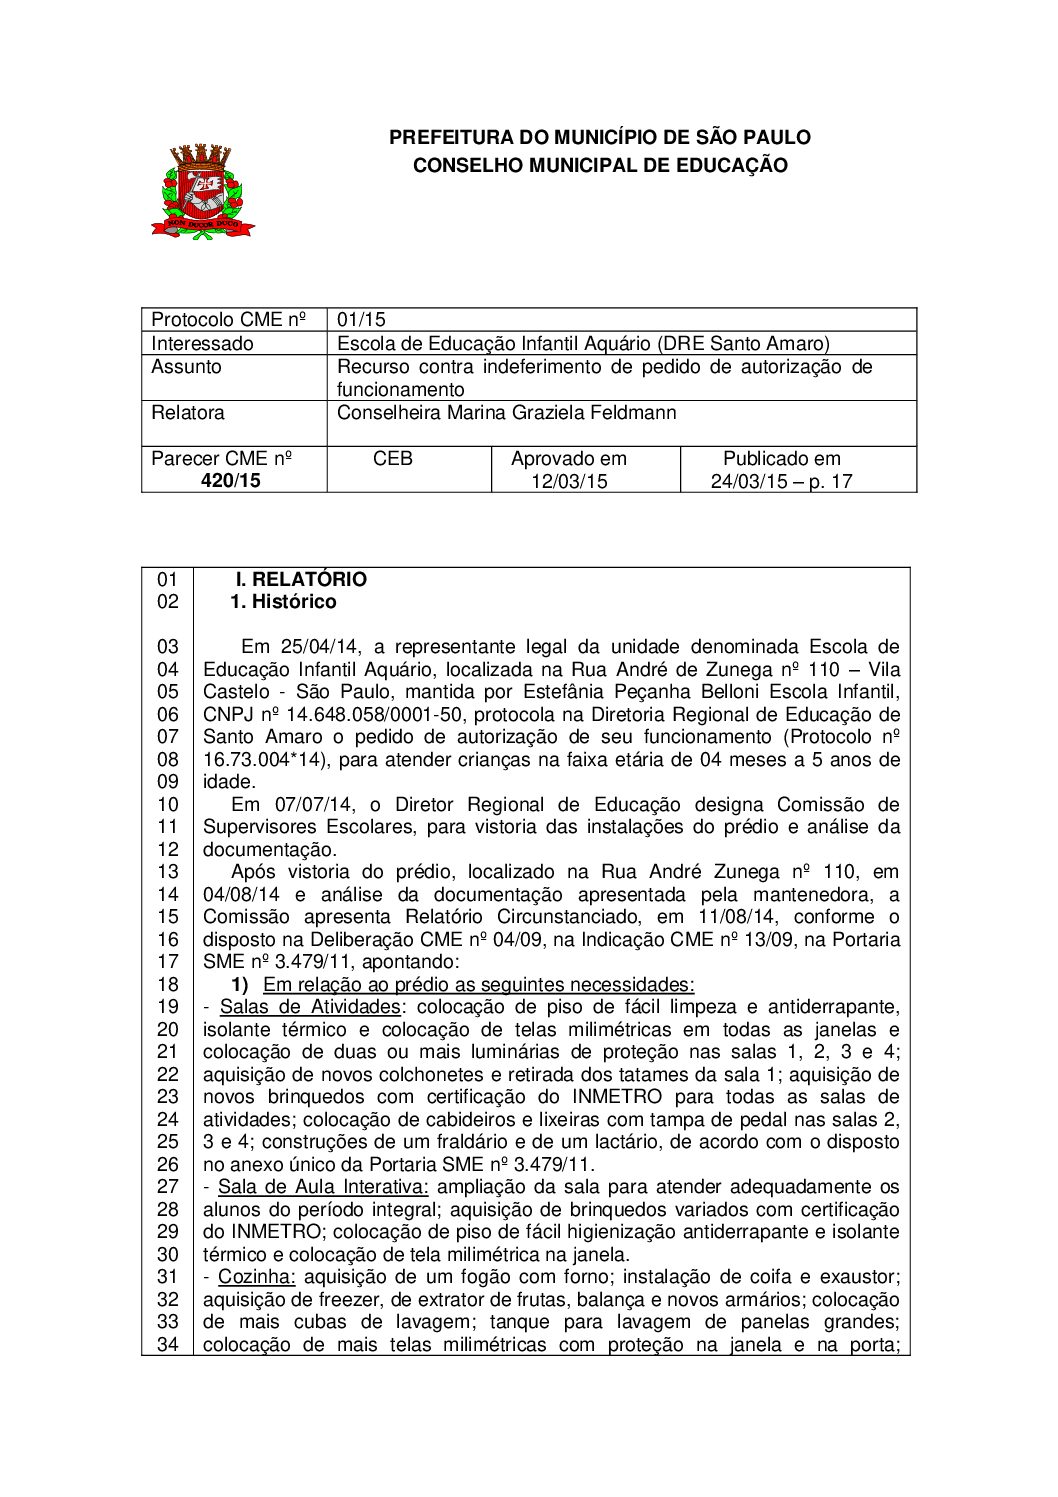 Parecer CME nº 420/2015 - Escola de Educação Infantil Aquário (DRE Santo Amaro) - Recurso contra indeferimento de pedido de autorização de funcionamento